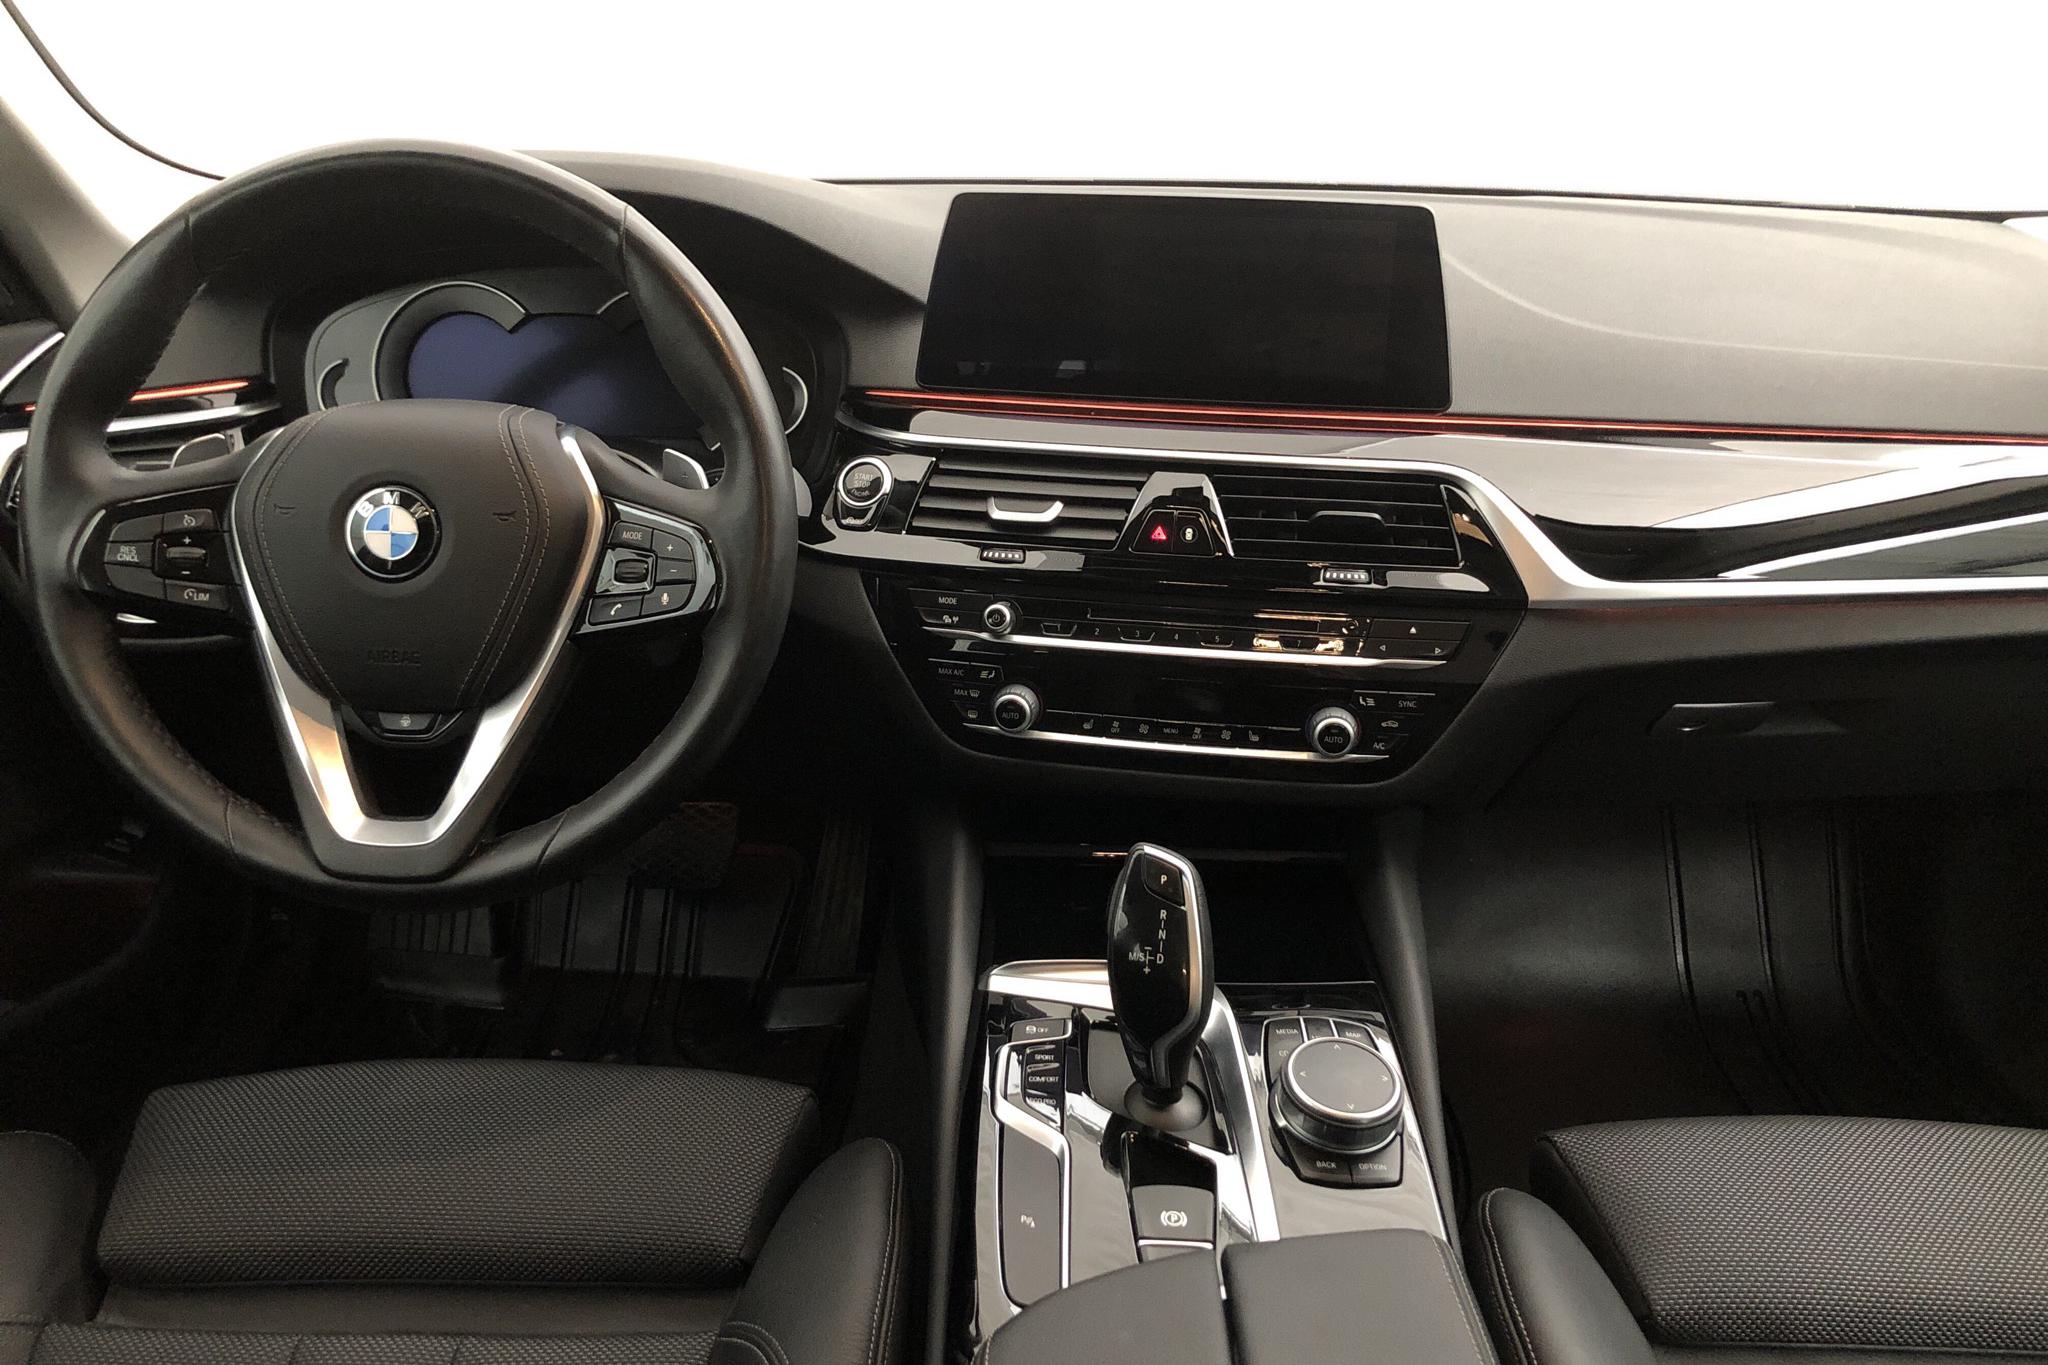 BMW 520d xDrive Touring, G31 (190hk) - 72 010 km - Automatic - gray - 2019